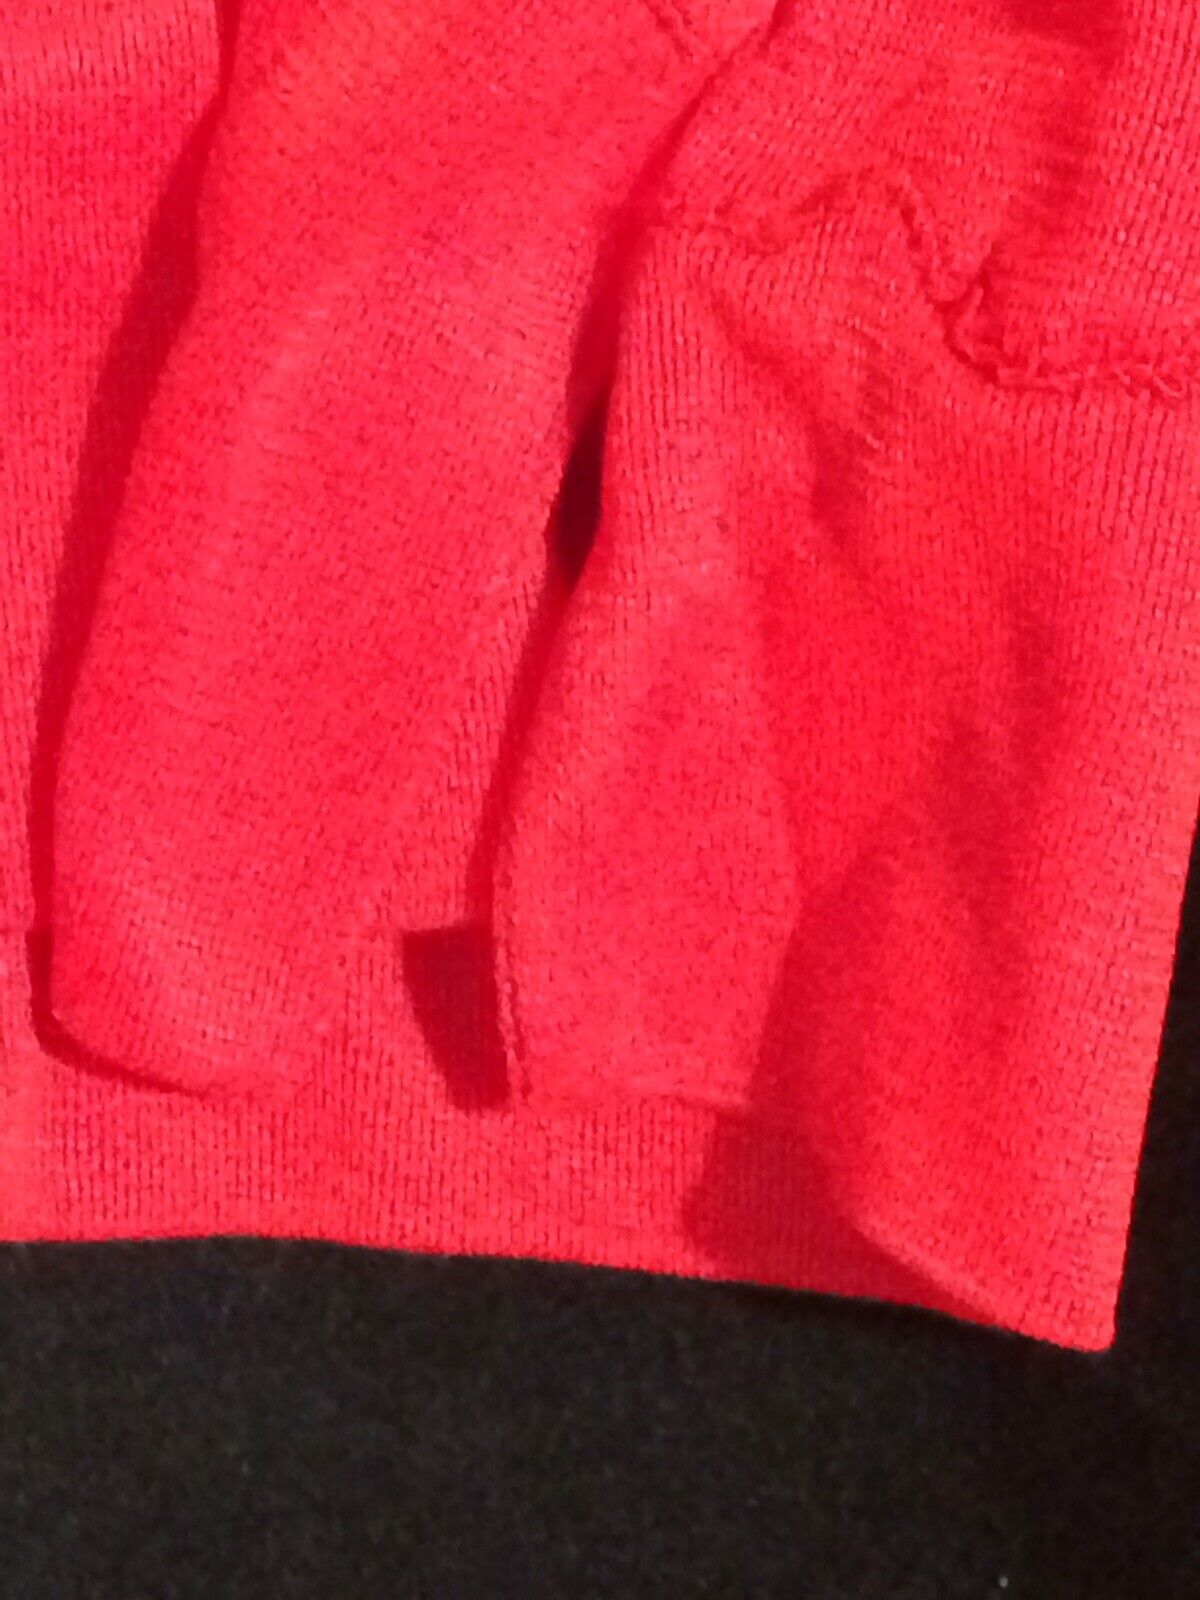 Slip Skirt Red Half Slip Looks Size Small - image 10